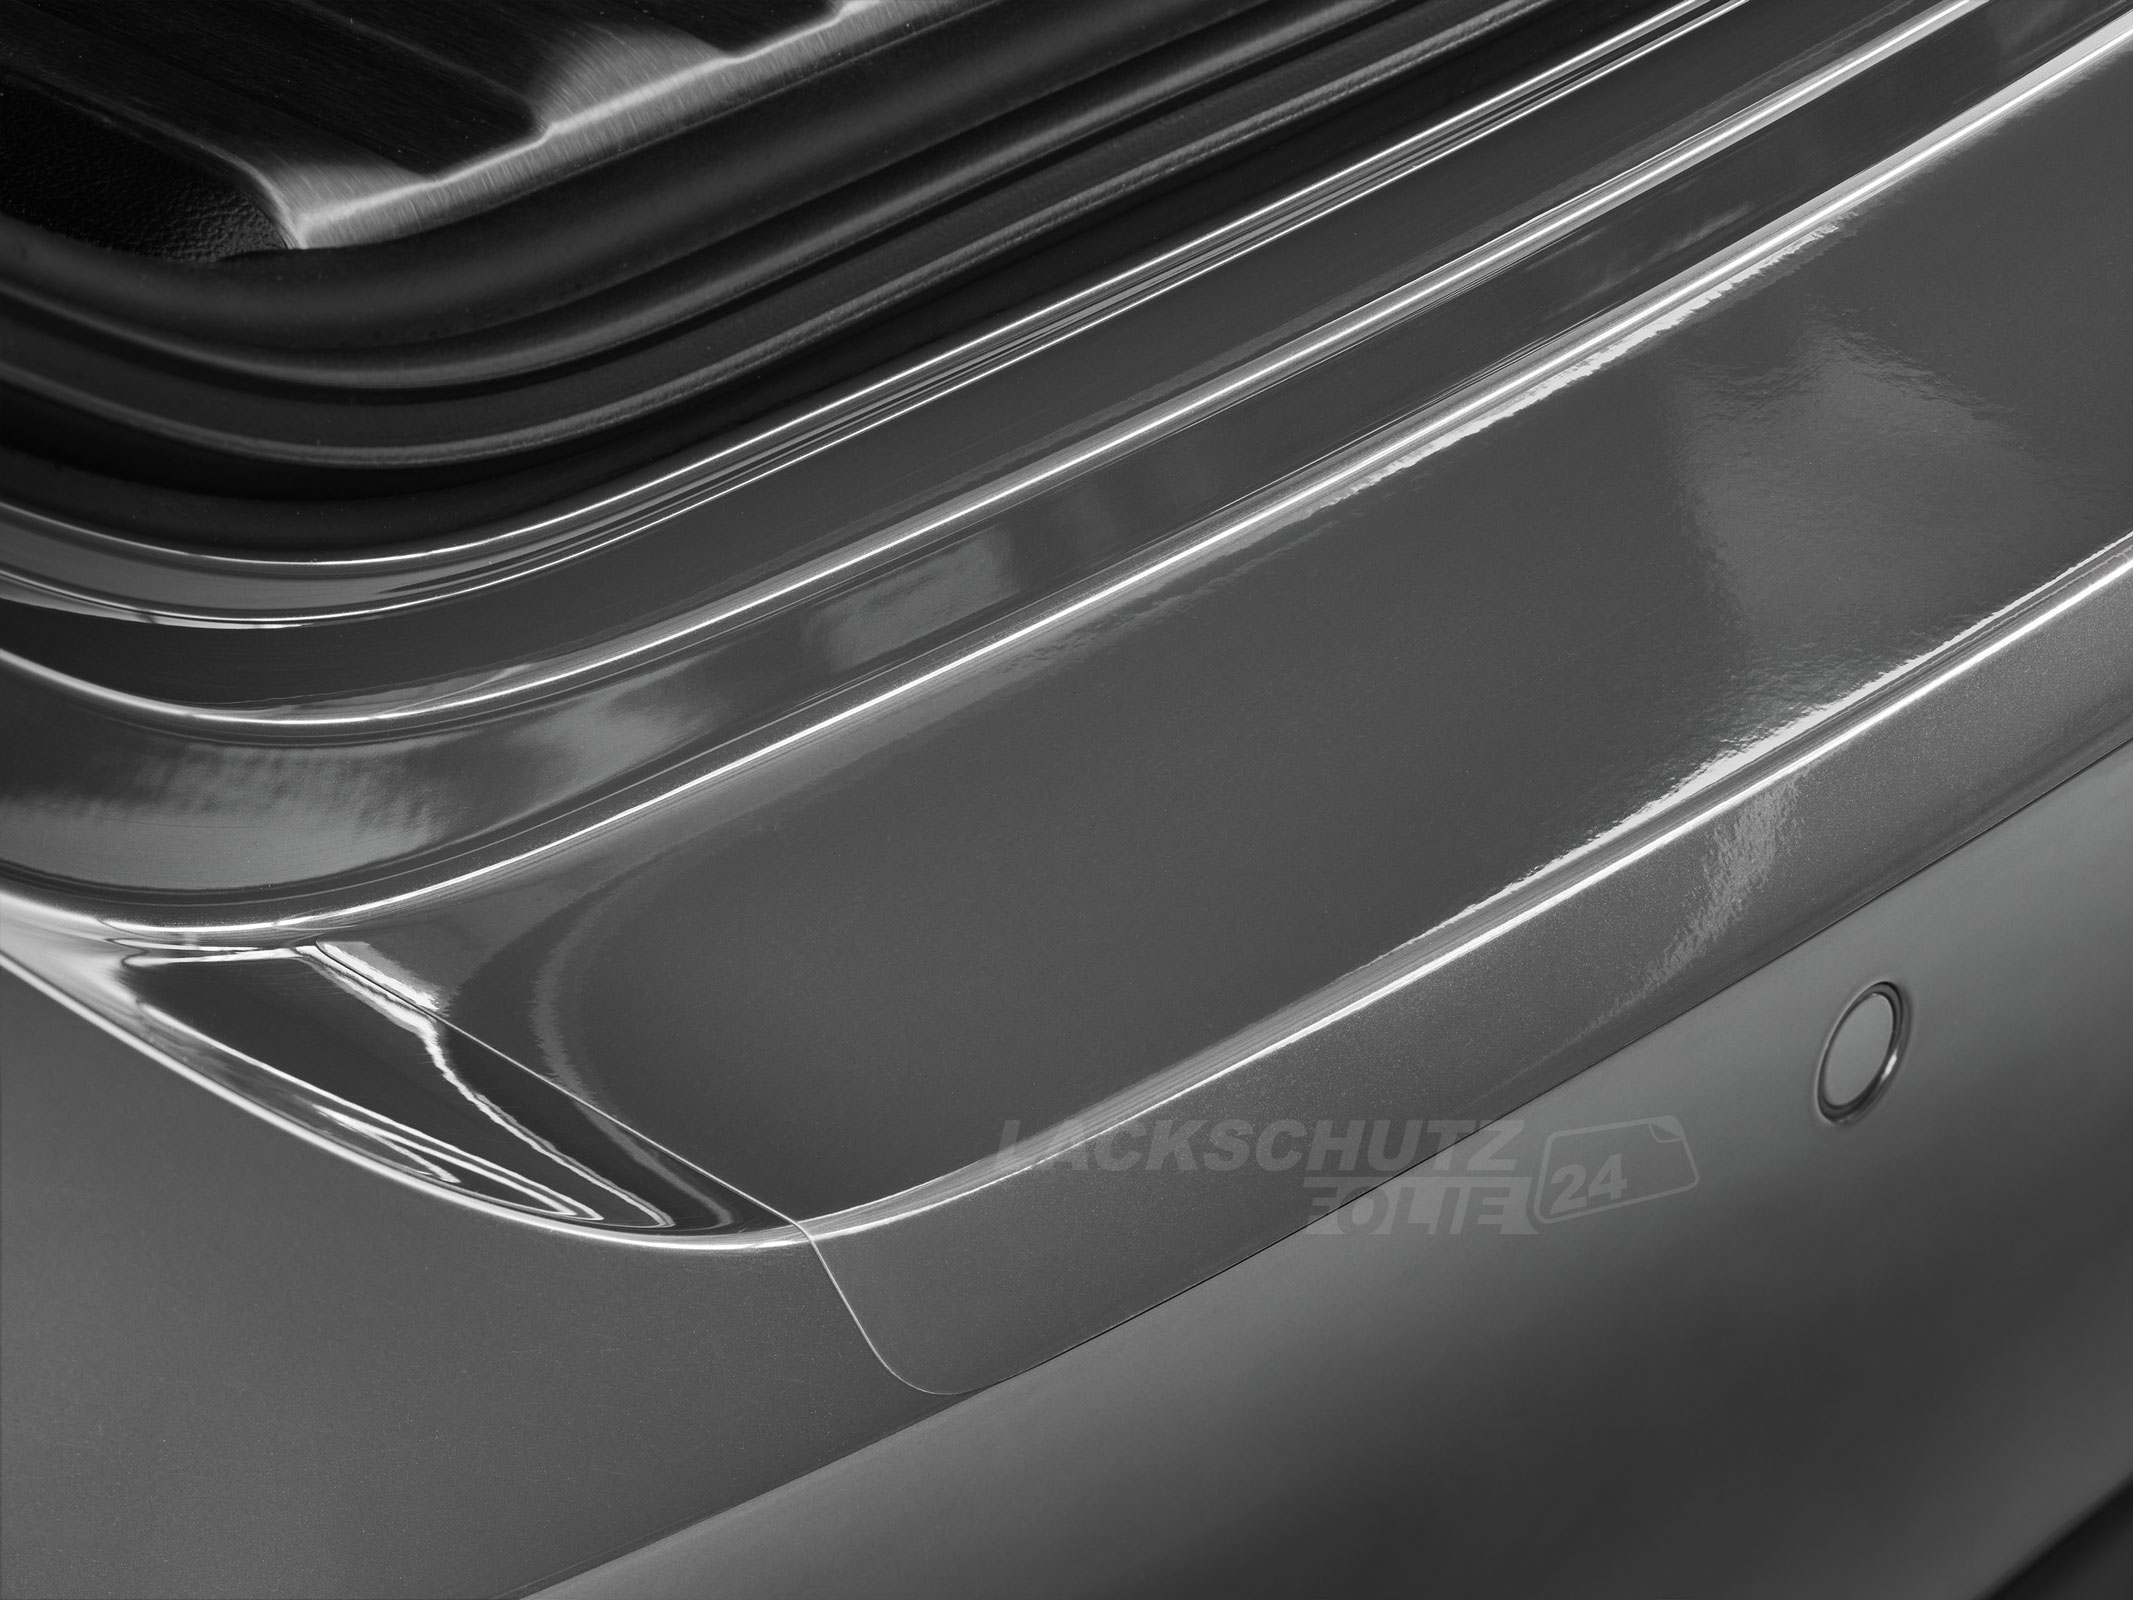 Ladekantenschutzfolie - Transparent Glatt Hochglänzend 150 µm stark für Renault Laguna Limousine (II) Typ G, BJ 2002-2007